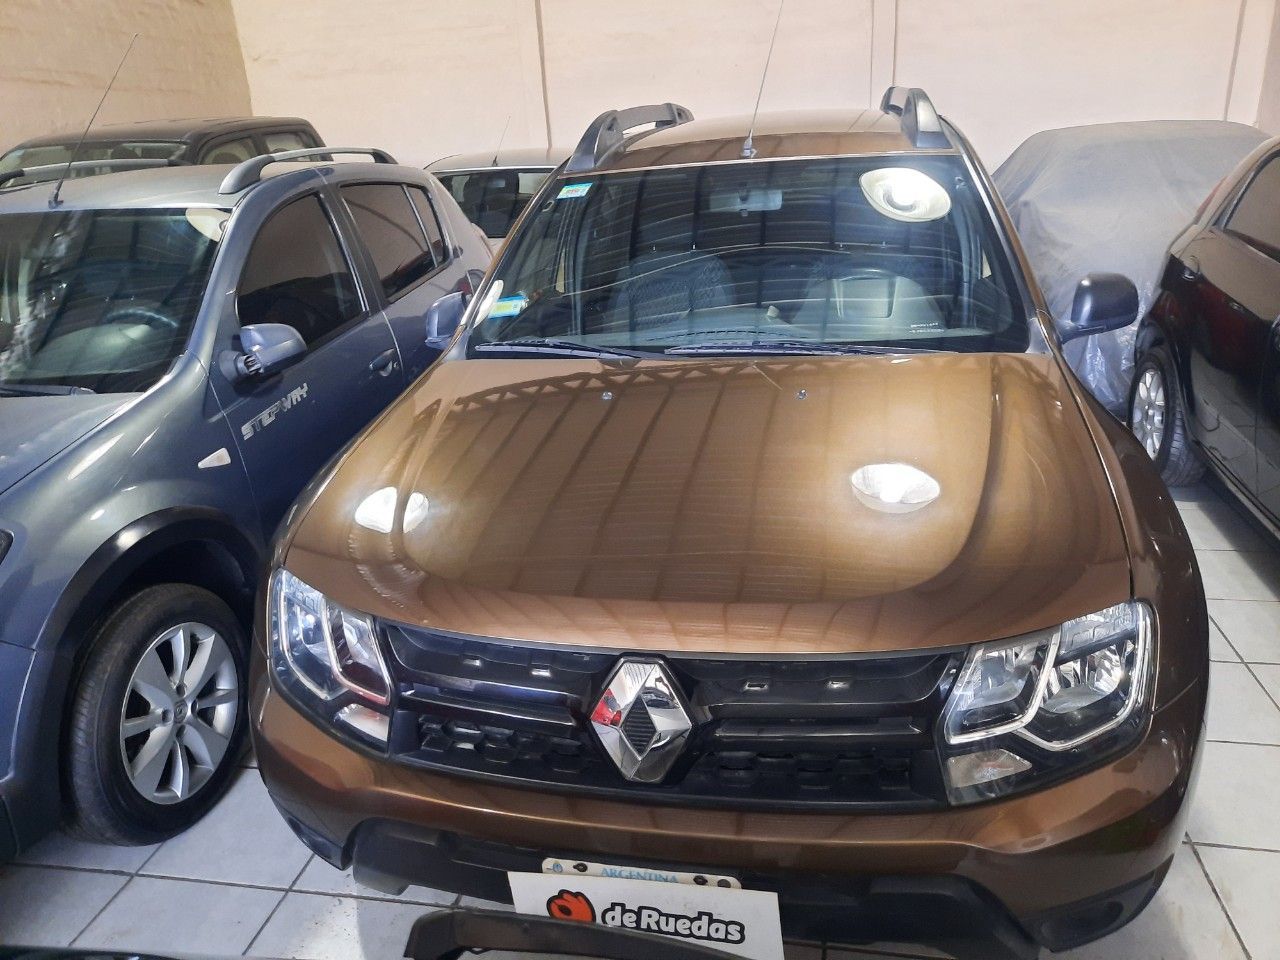 Renault Duster Usado Financiado en Mendoza, deRuedas